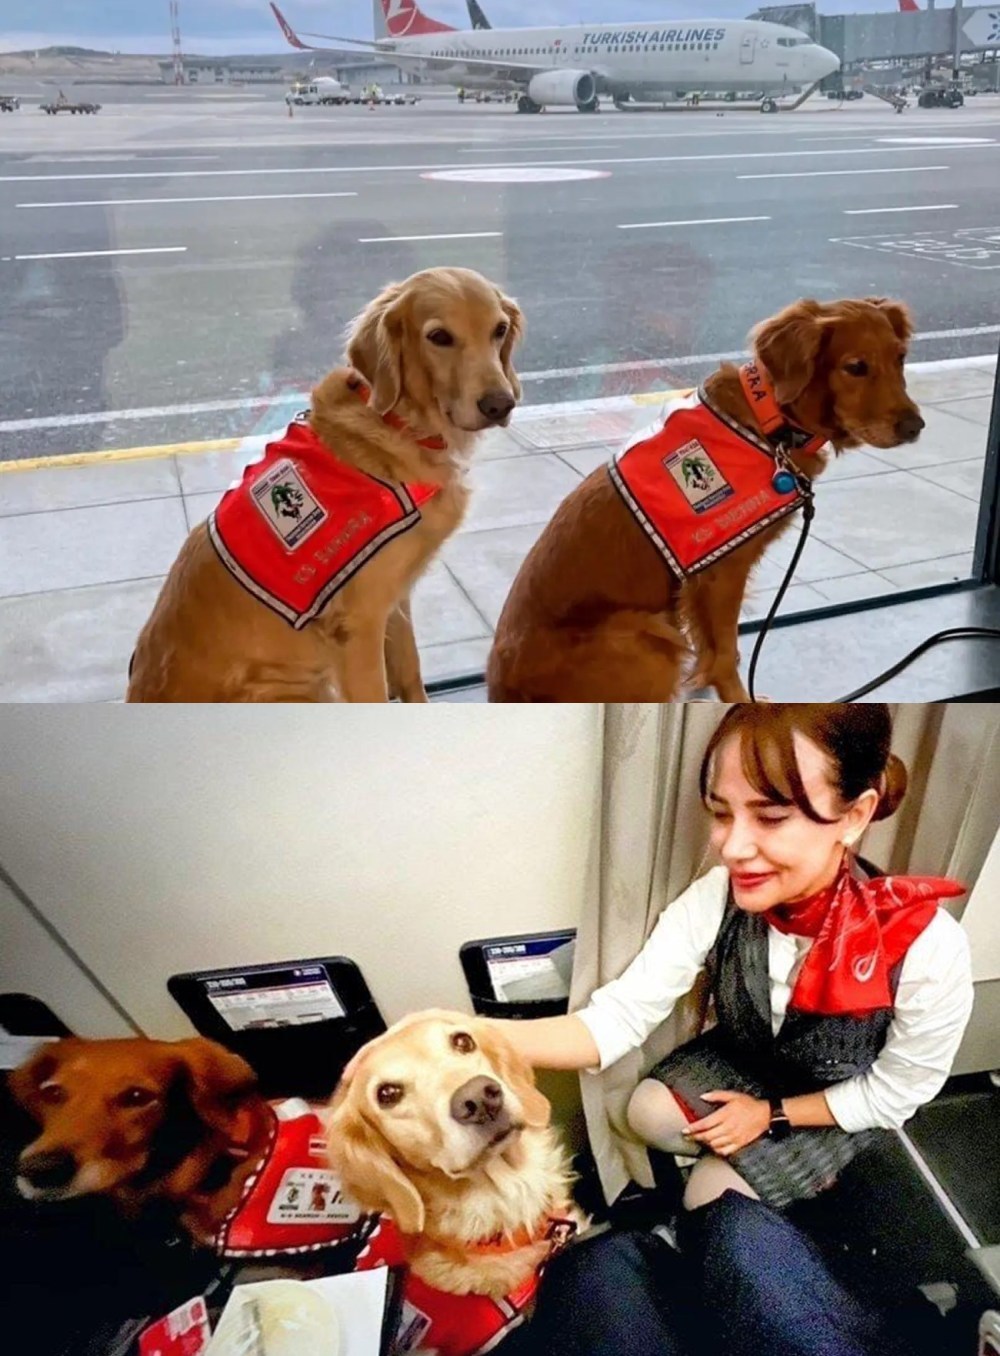  
Những chú chó cứu hộ được đối đãi đặc biệt tại sân bay. (Ảnh: Dailysabah)